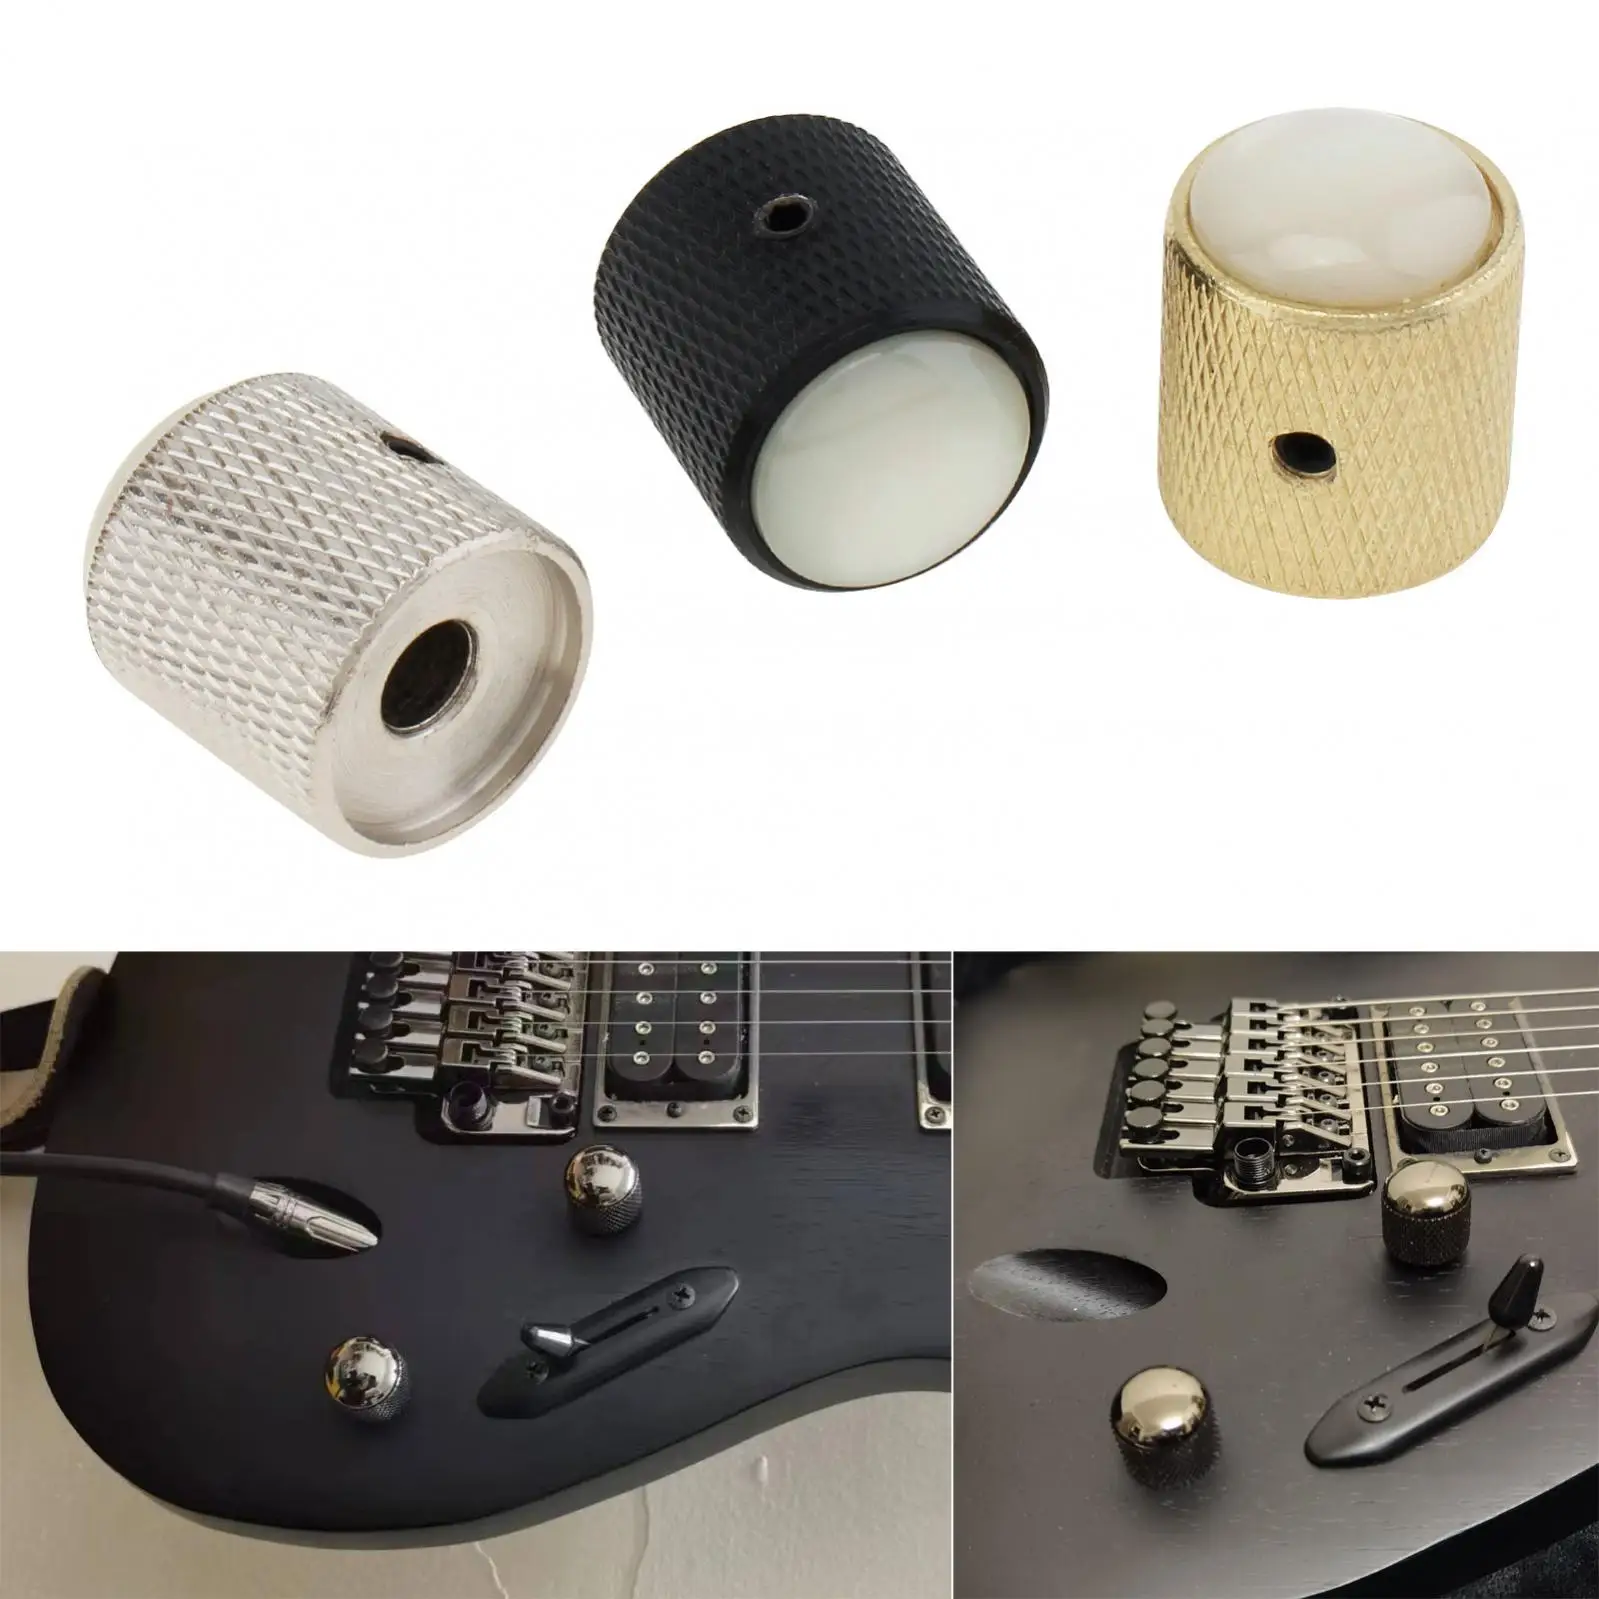 

Металлические куполообразные БЕЛЫЕ РАКУШКИ, верхняя ручка регулировки громкости для электрической гитары/басов с искусственной кожей, кнопка регулировки громкости